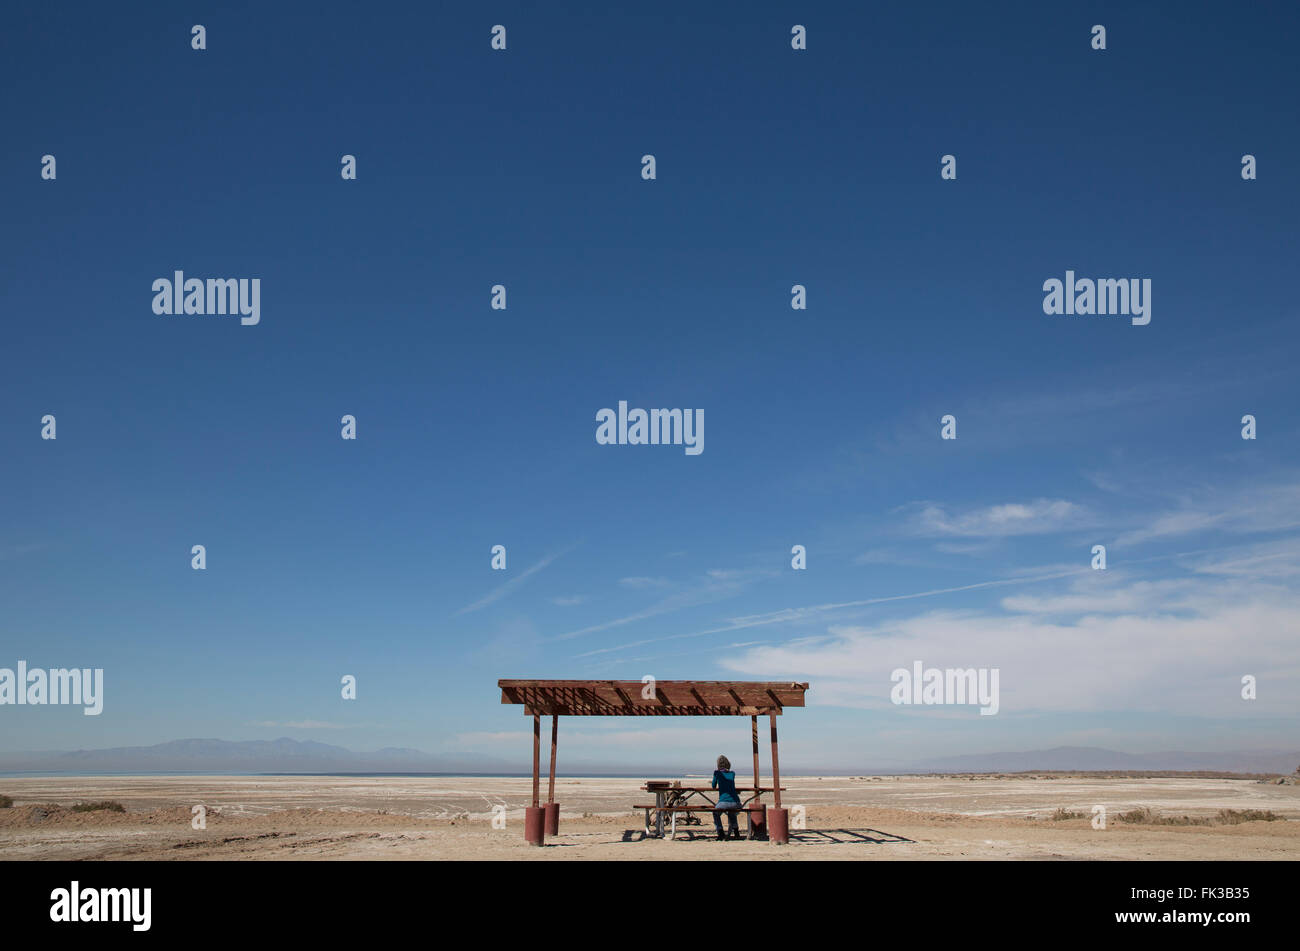 Una donna si siede da solo ad un picnic abbandonata zona lontana dal litorale sfuggente del Salton Sea, California USA Foto Stock